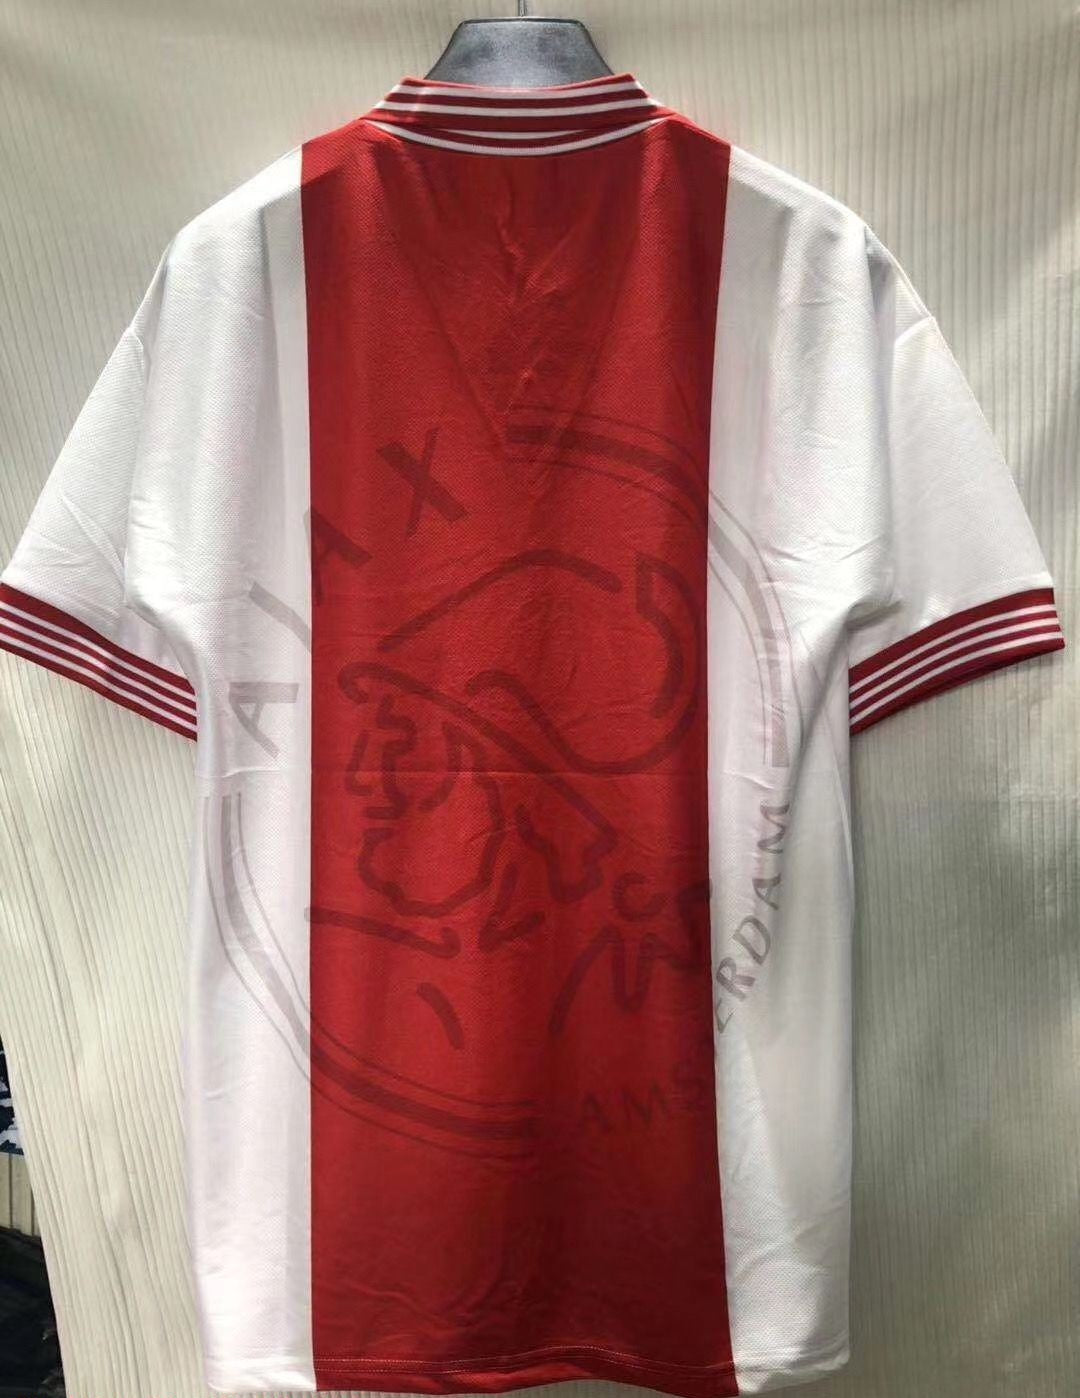 Ajax 95-96 Home Shirt